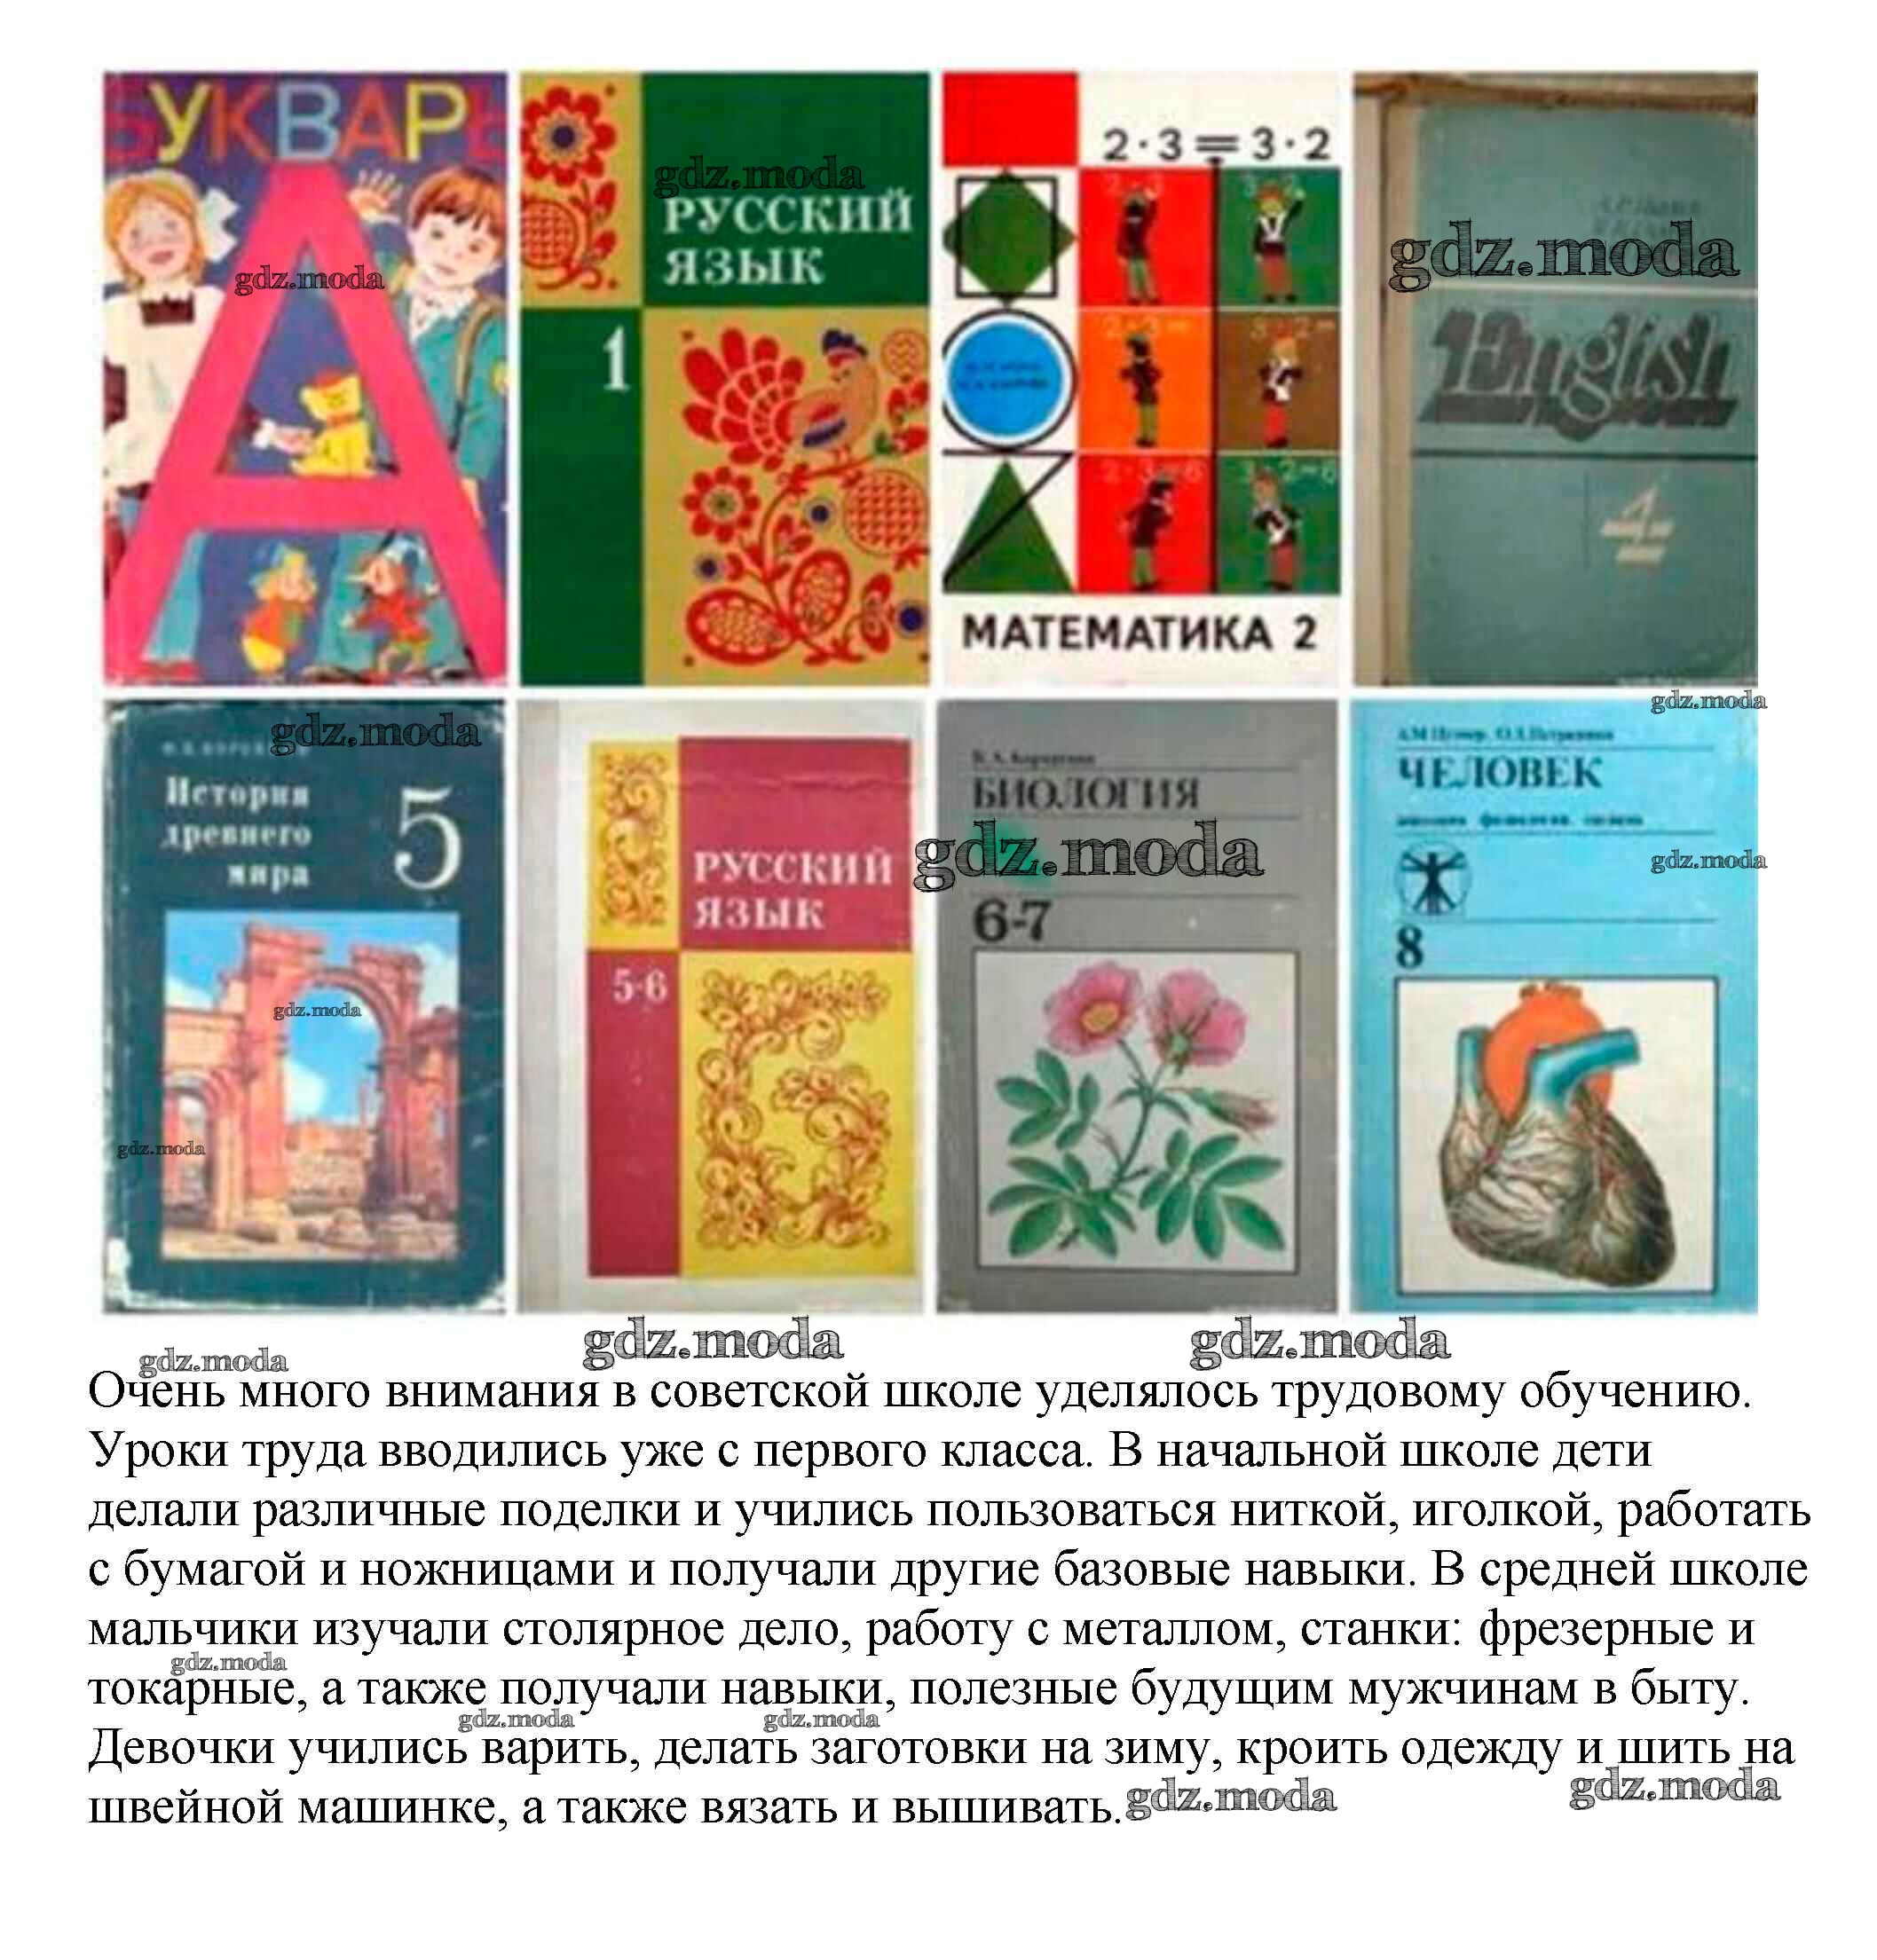 Старые советские учебники